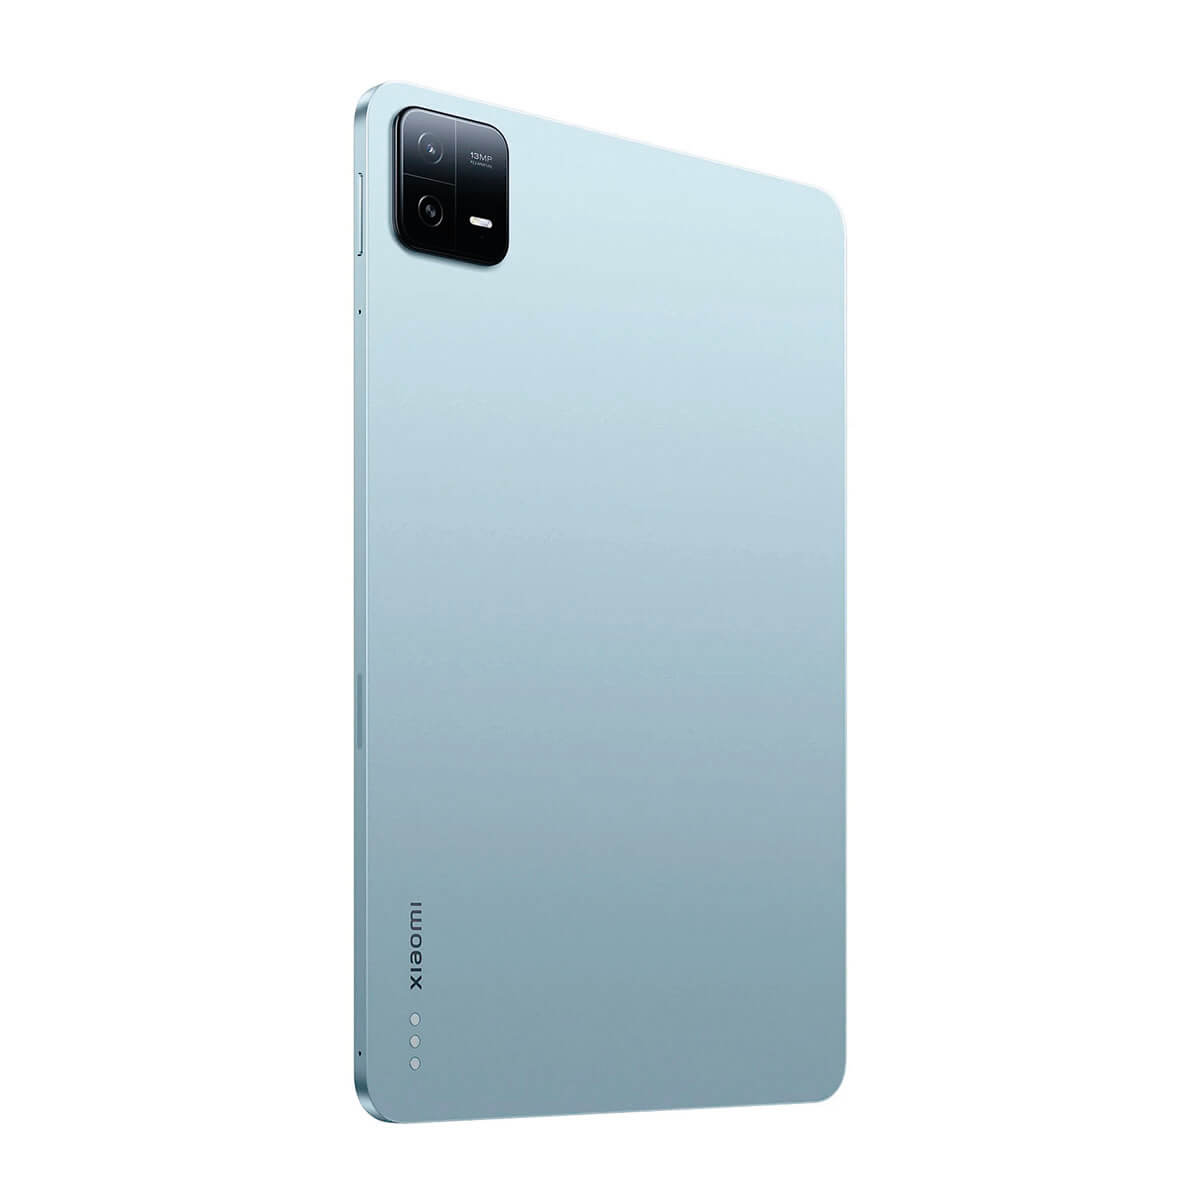 XIAOMI Blau Pad GB, Tablet, 6, 128 11 Zoll,